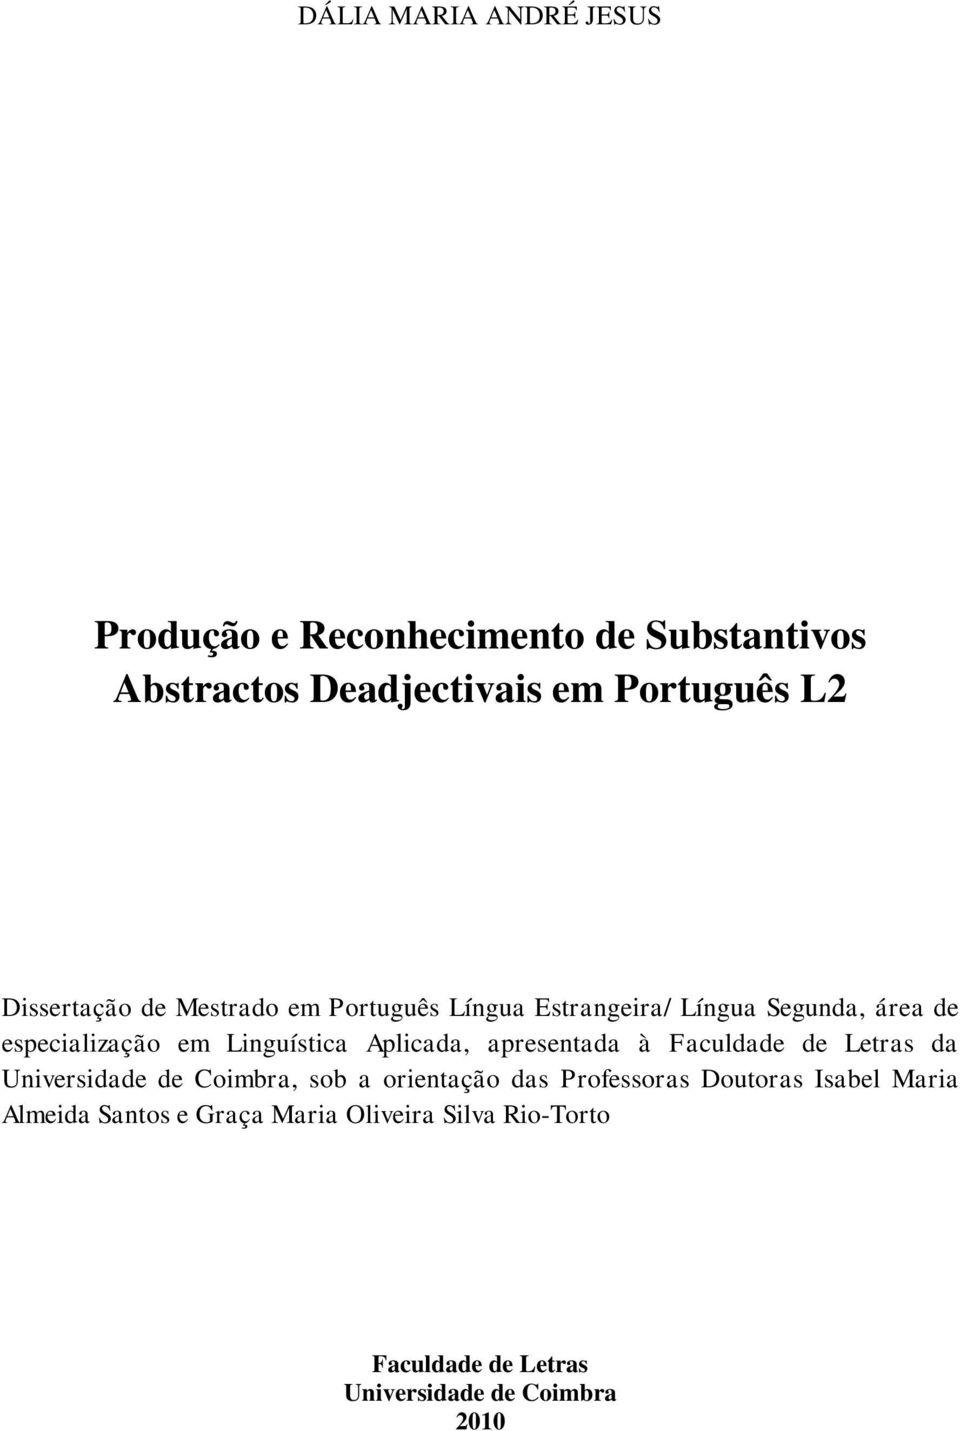 Aplicada, apresentada à Faculdade de Letras da Universidade de Coimbra, sob a orientação das Professoras